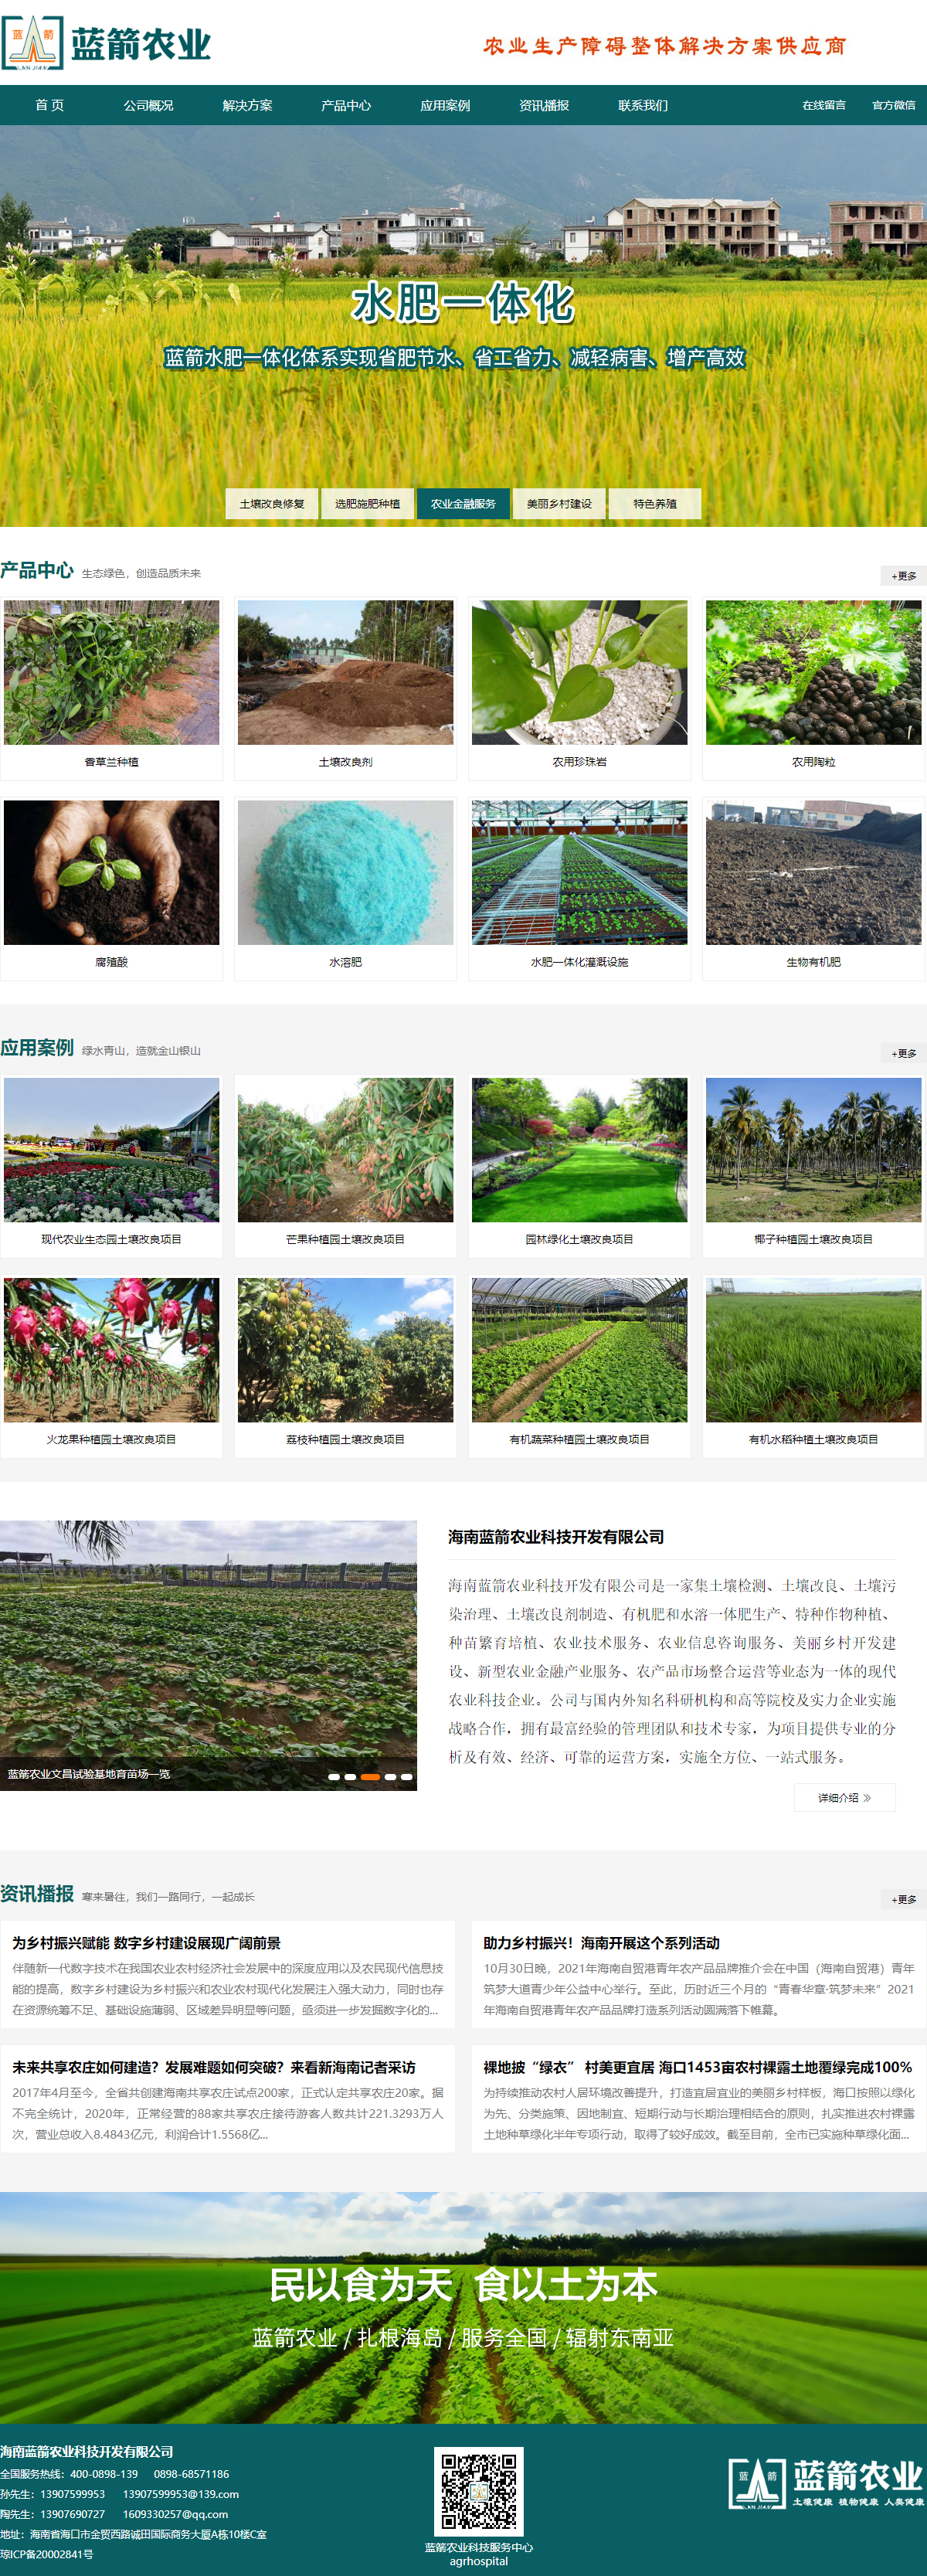 海南蓝箭农业科技开发有限公司网站案例